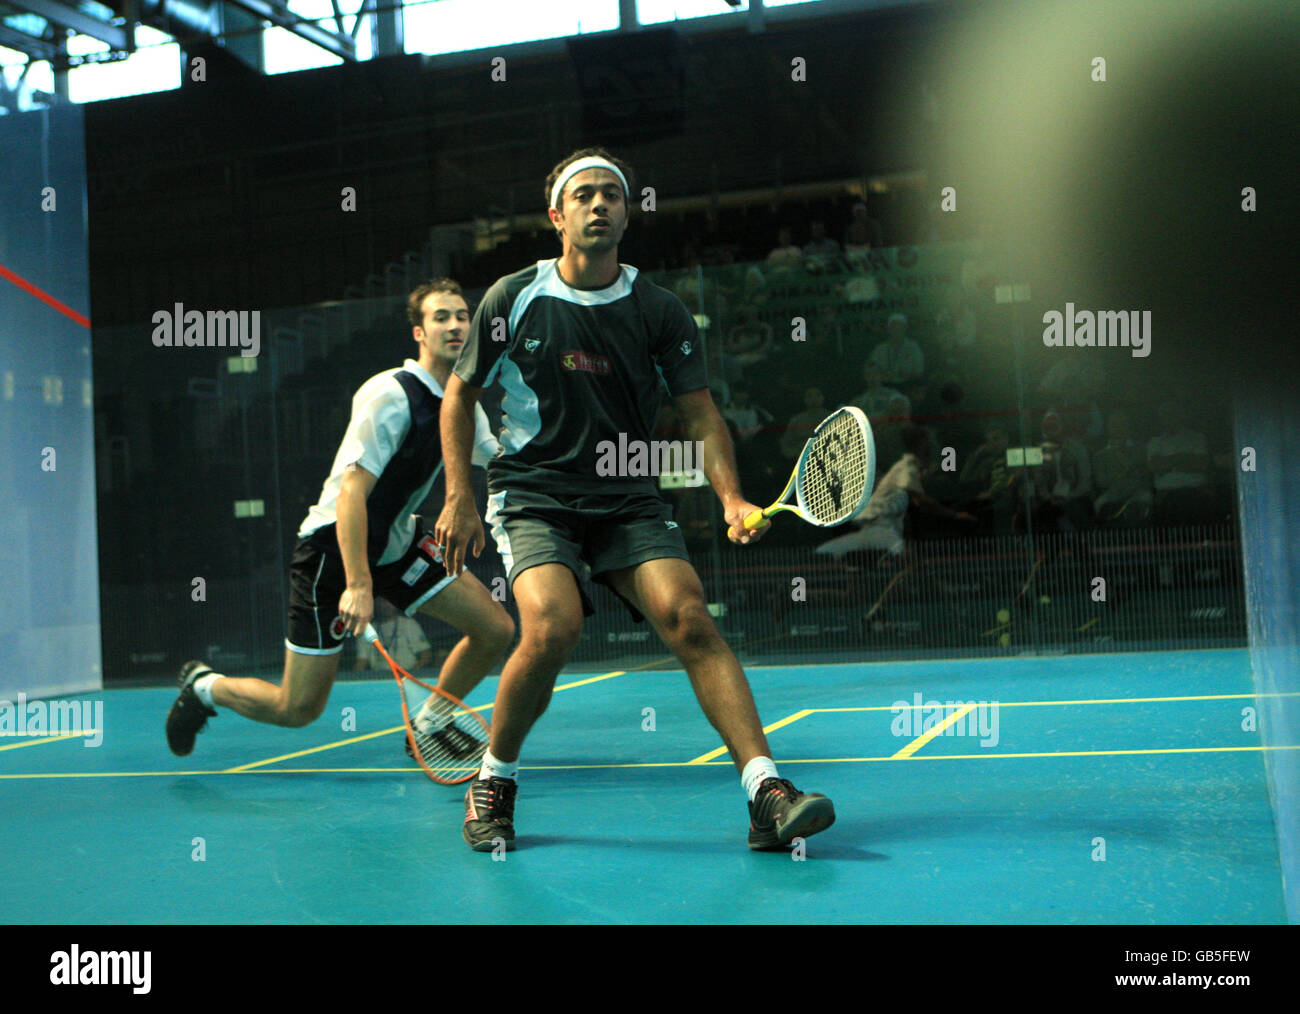 Squash - Championnats du monde de squash Hi-TEC 2008 - Centre national de squash.Numéro un mondial AMR Shabana d'Égypte en action contre Simon Rosner en Allemagne Banque D'Images